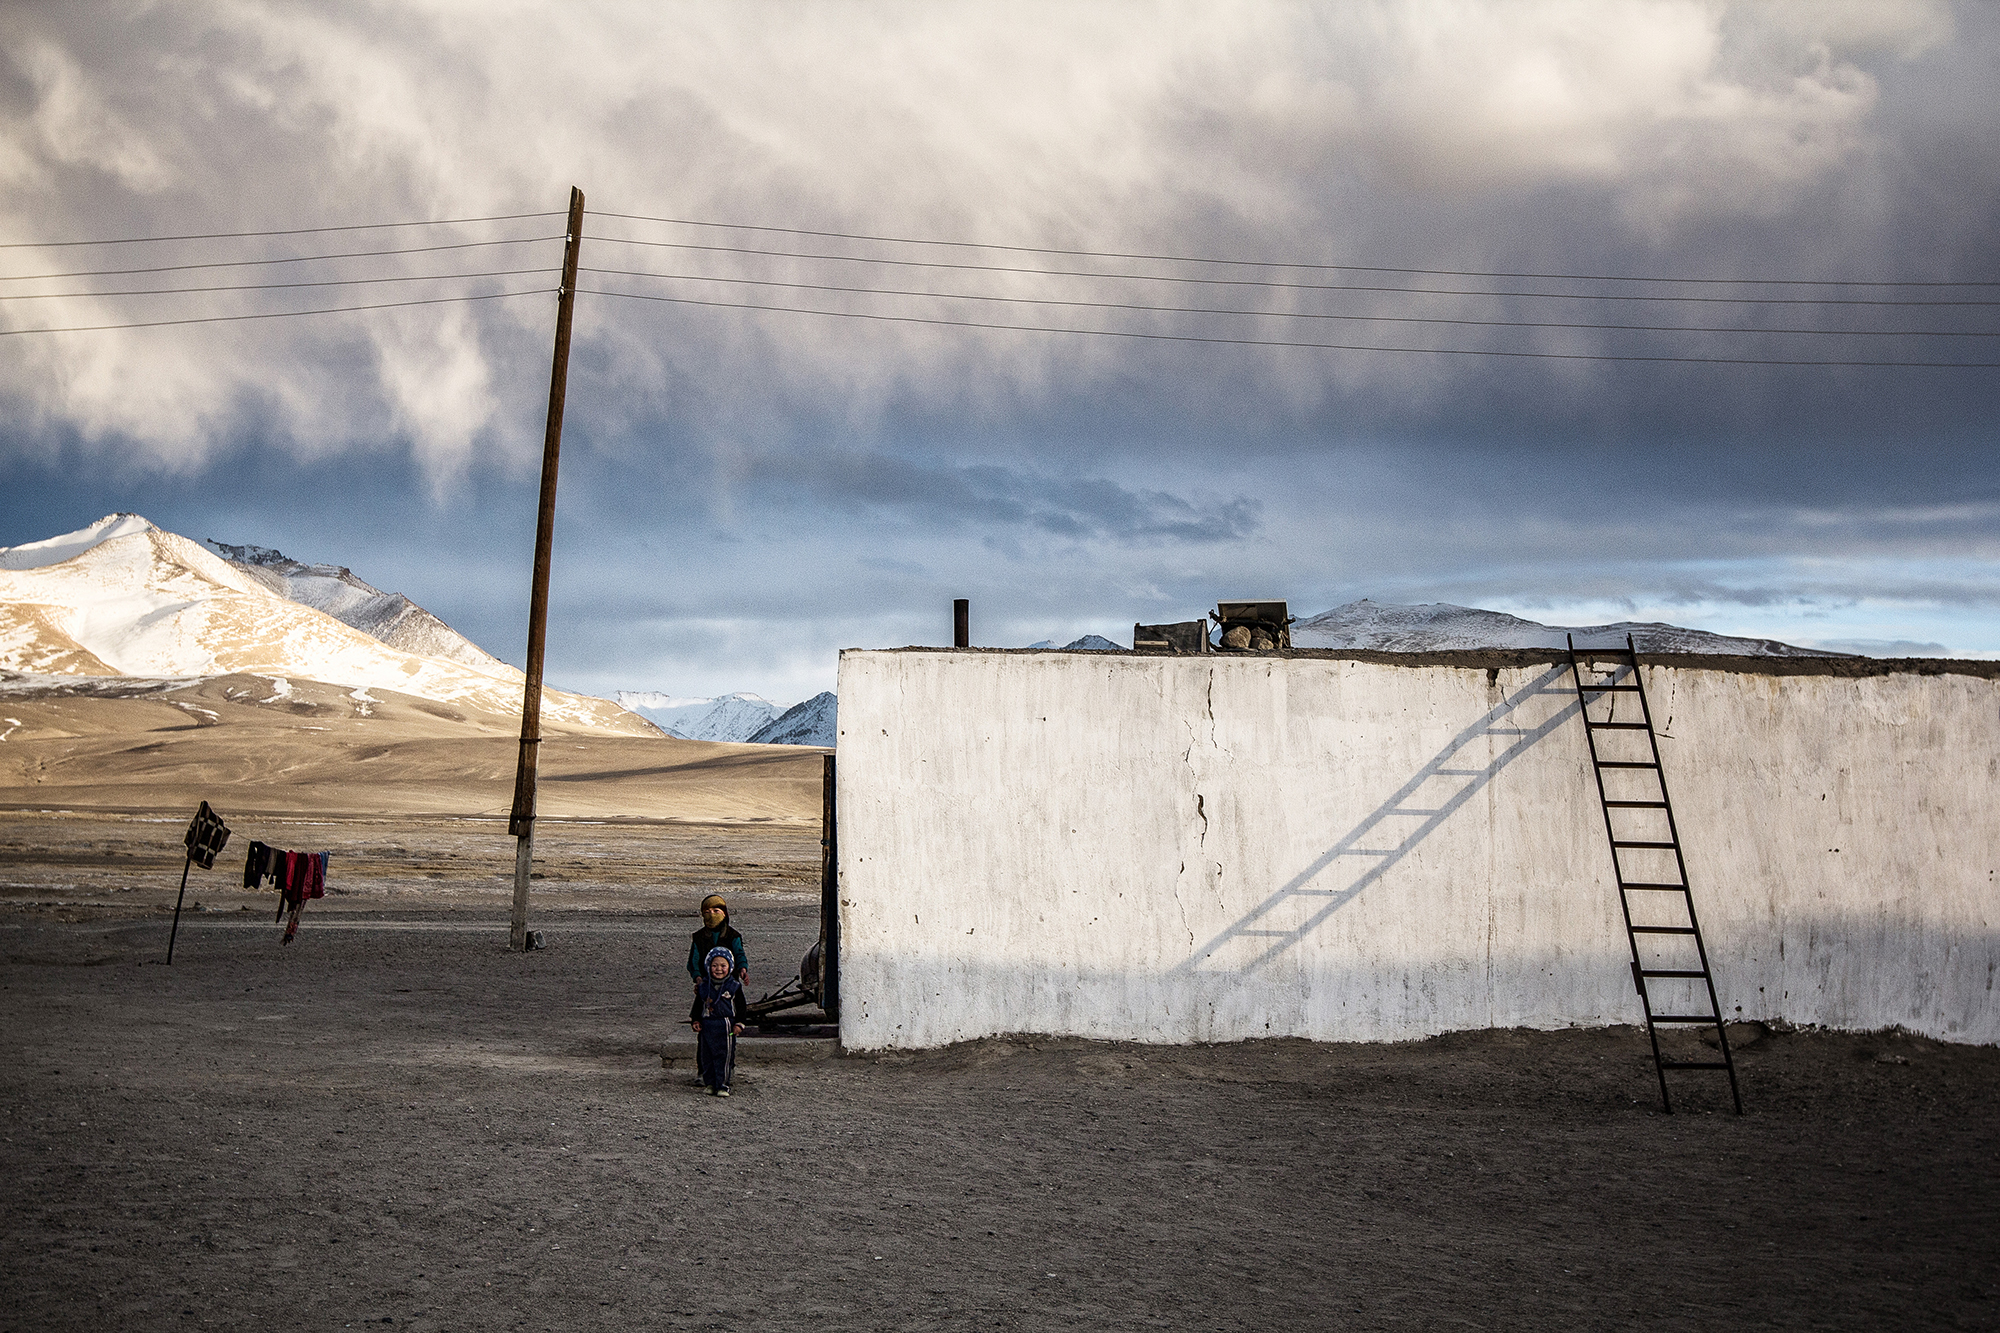 Обезбедити грејање // Бајзо живи у планинском селу Кара Арт, близу пустиње на Памиру, где се температура понекад спусти чак и до -50 степени Целзијуса.